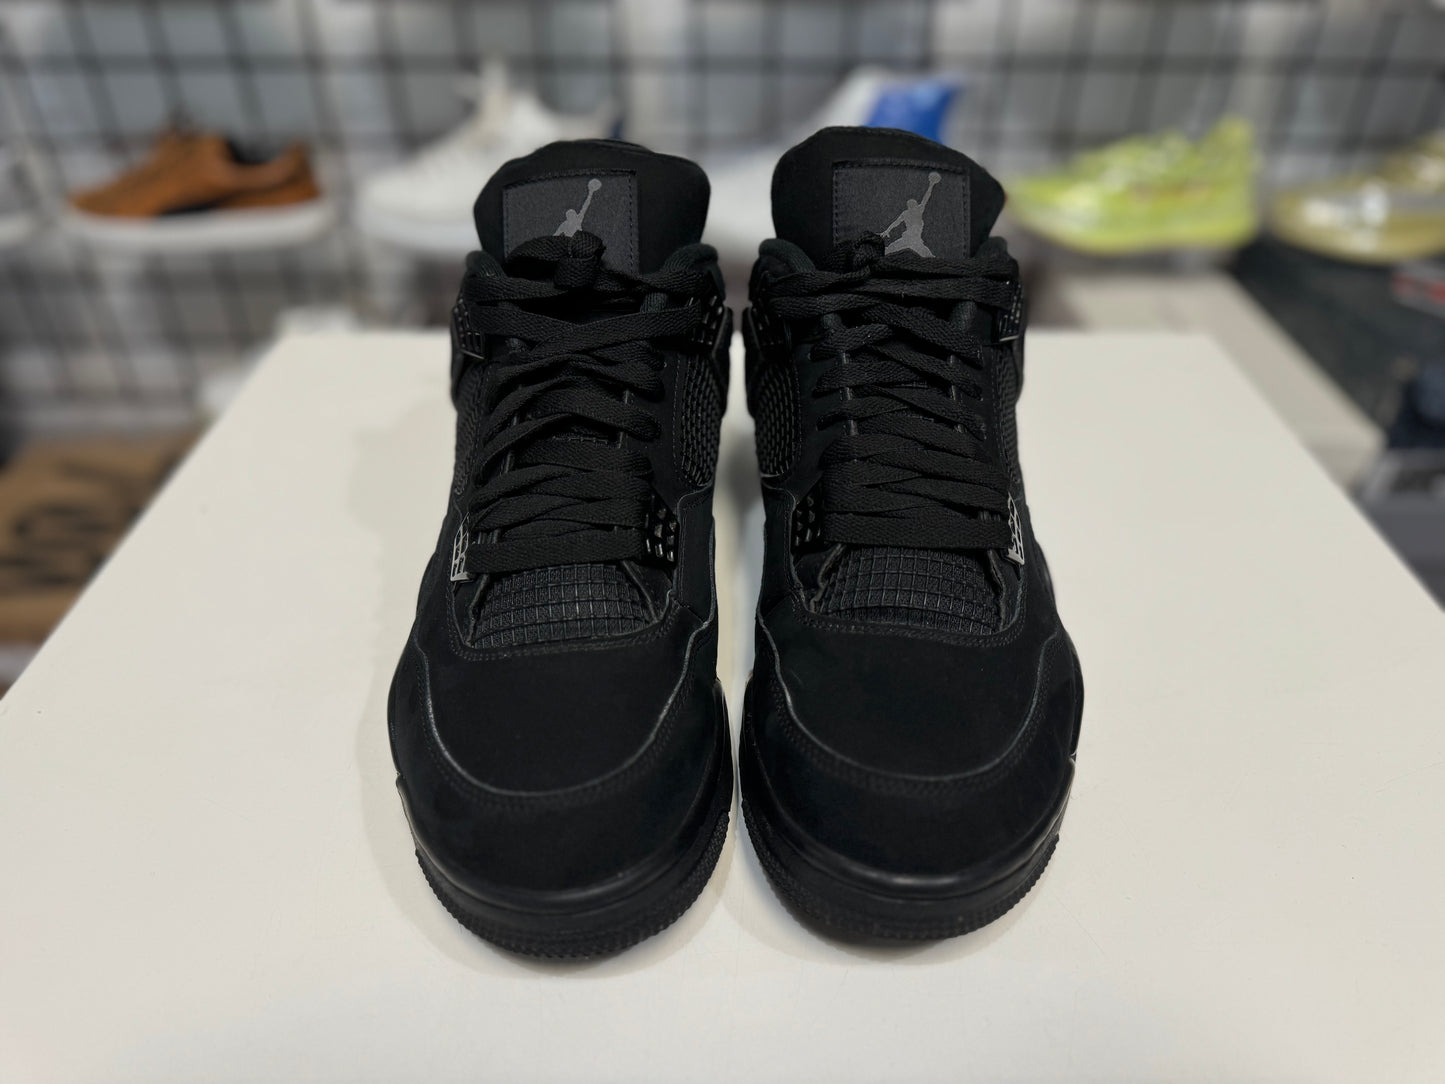 Jordan 4 2020 Black Cat size 11.5